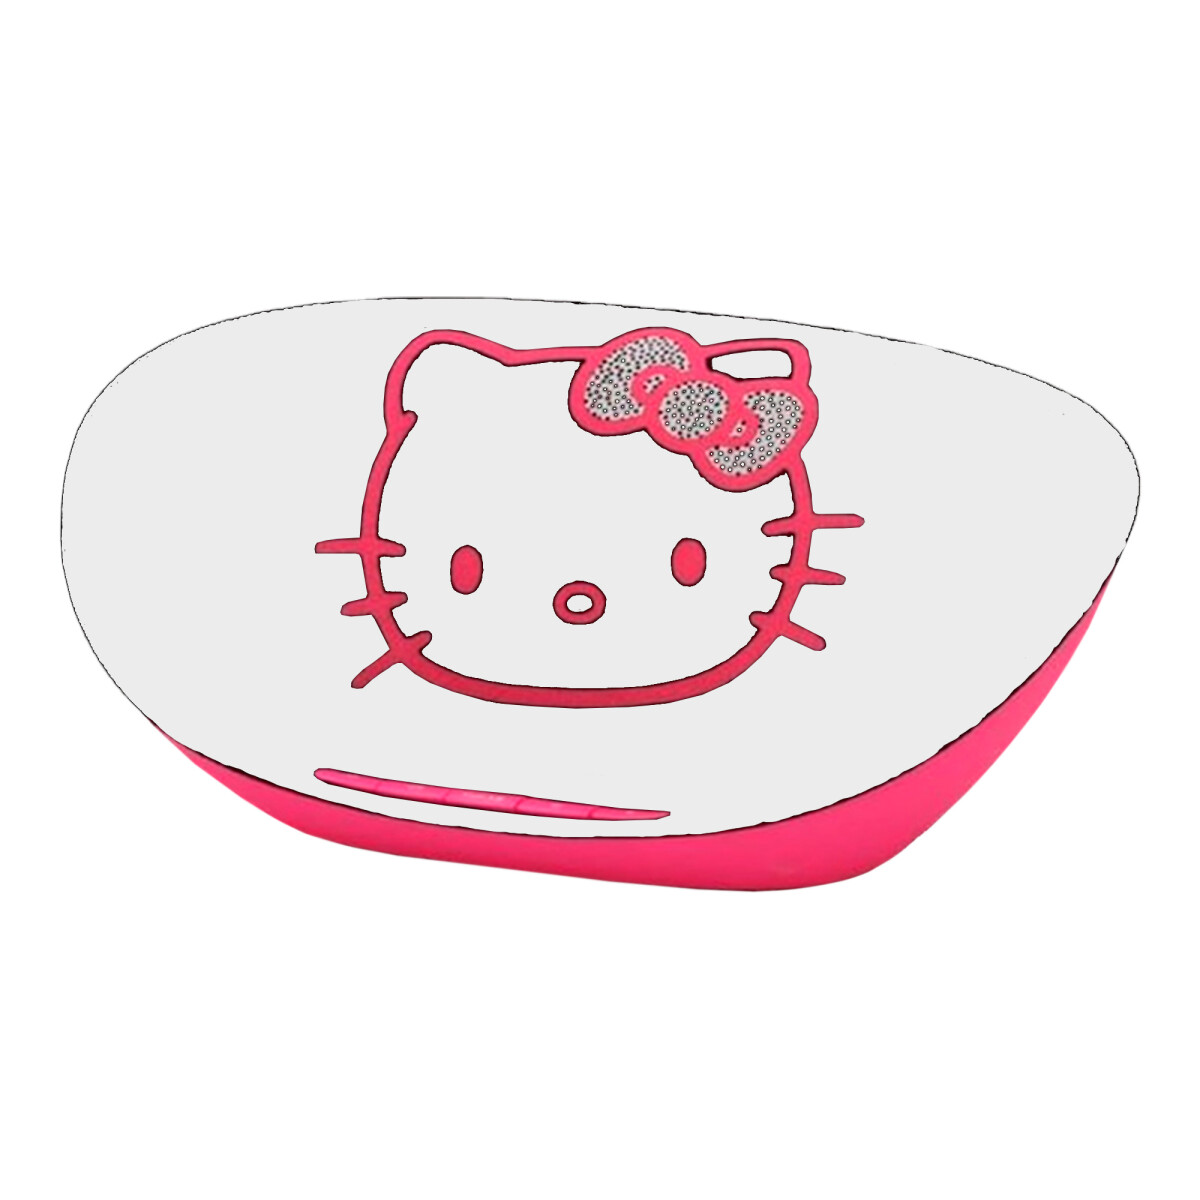 Parlante Portátil Hello Kitty Oval Bluetooth Micrófono 3.5mm - 001 